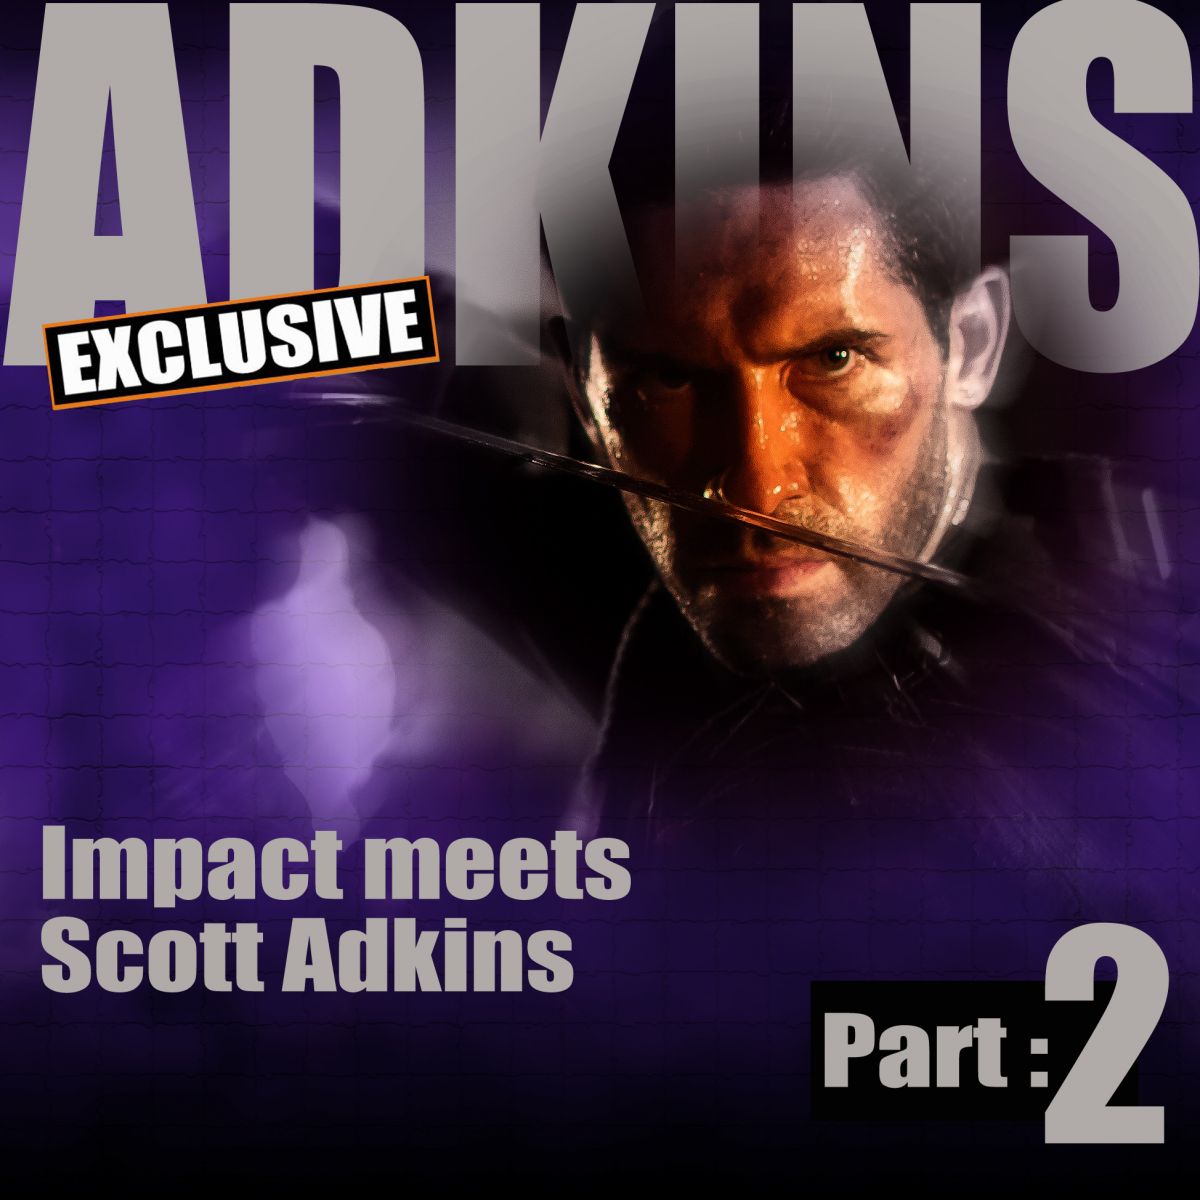 Scott Adkins exclusive interview with Mike Leeder